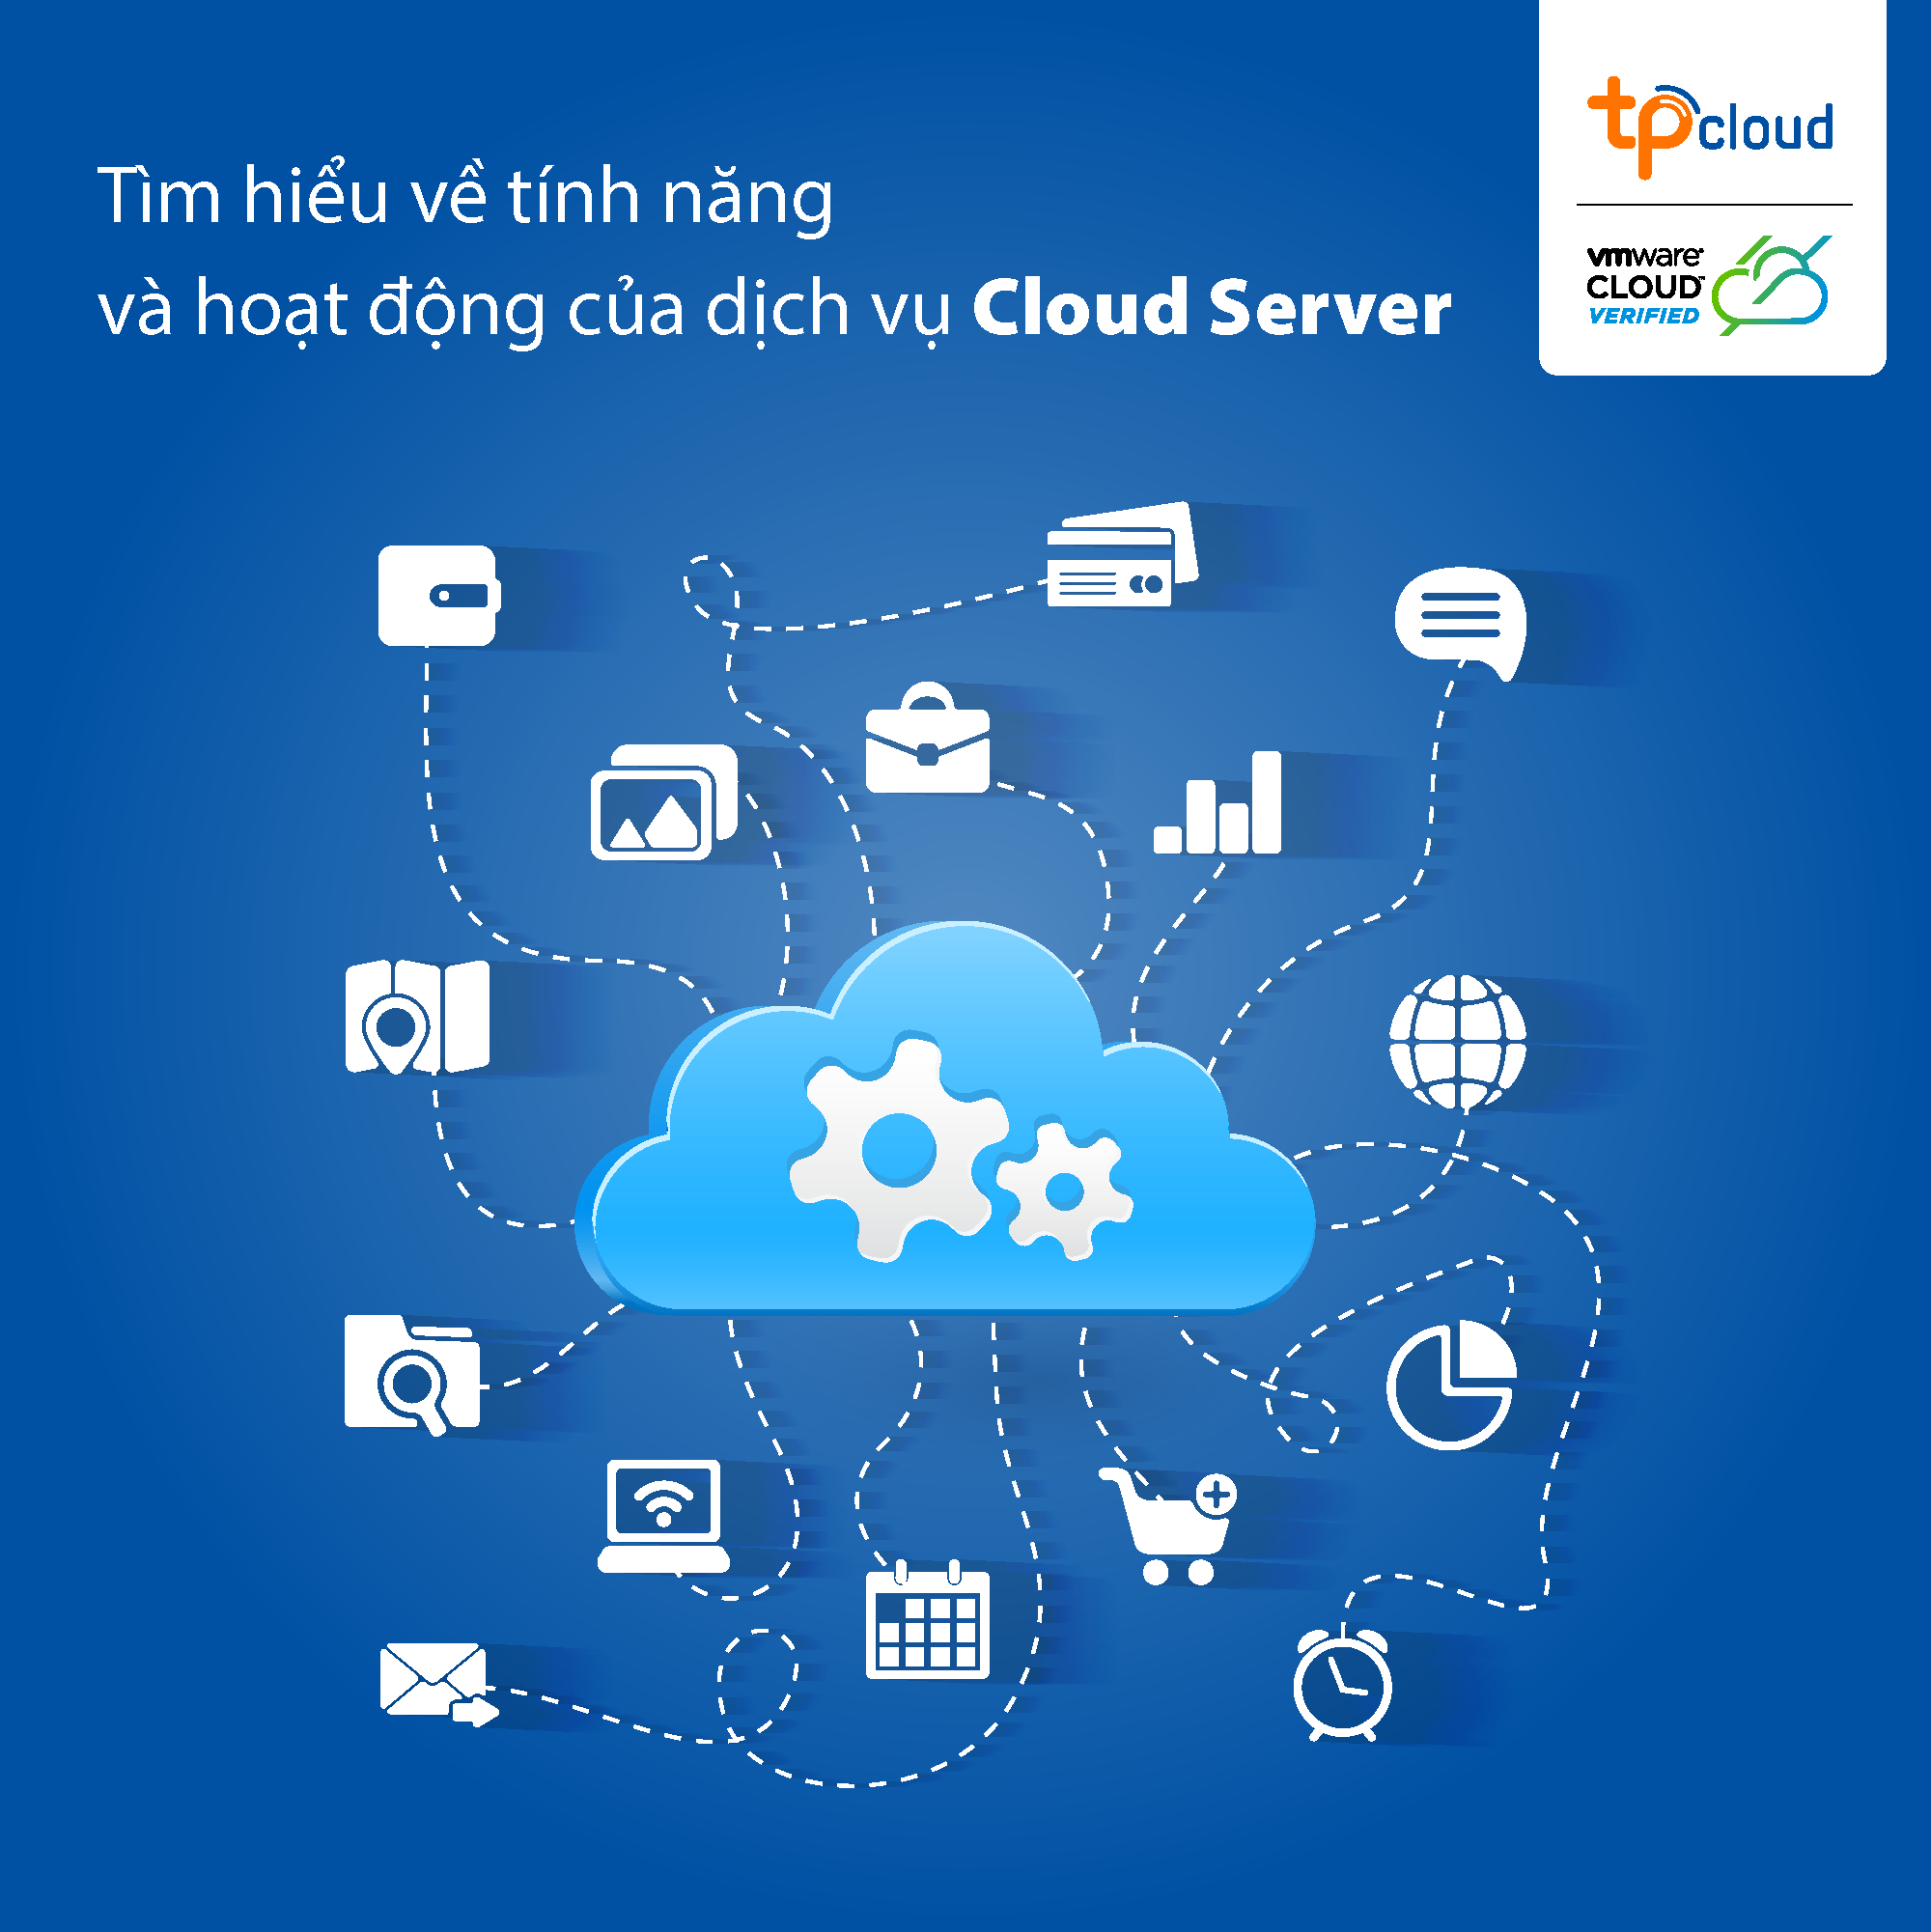 tim-hieu-ve-dich-vu-cloud-server-uy-tin-tu-tpcloud